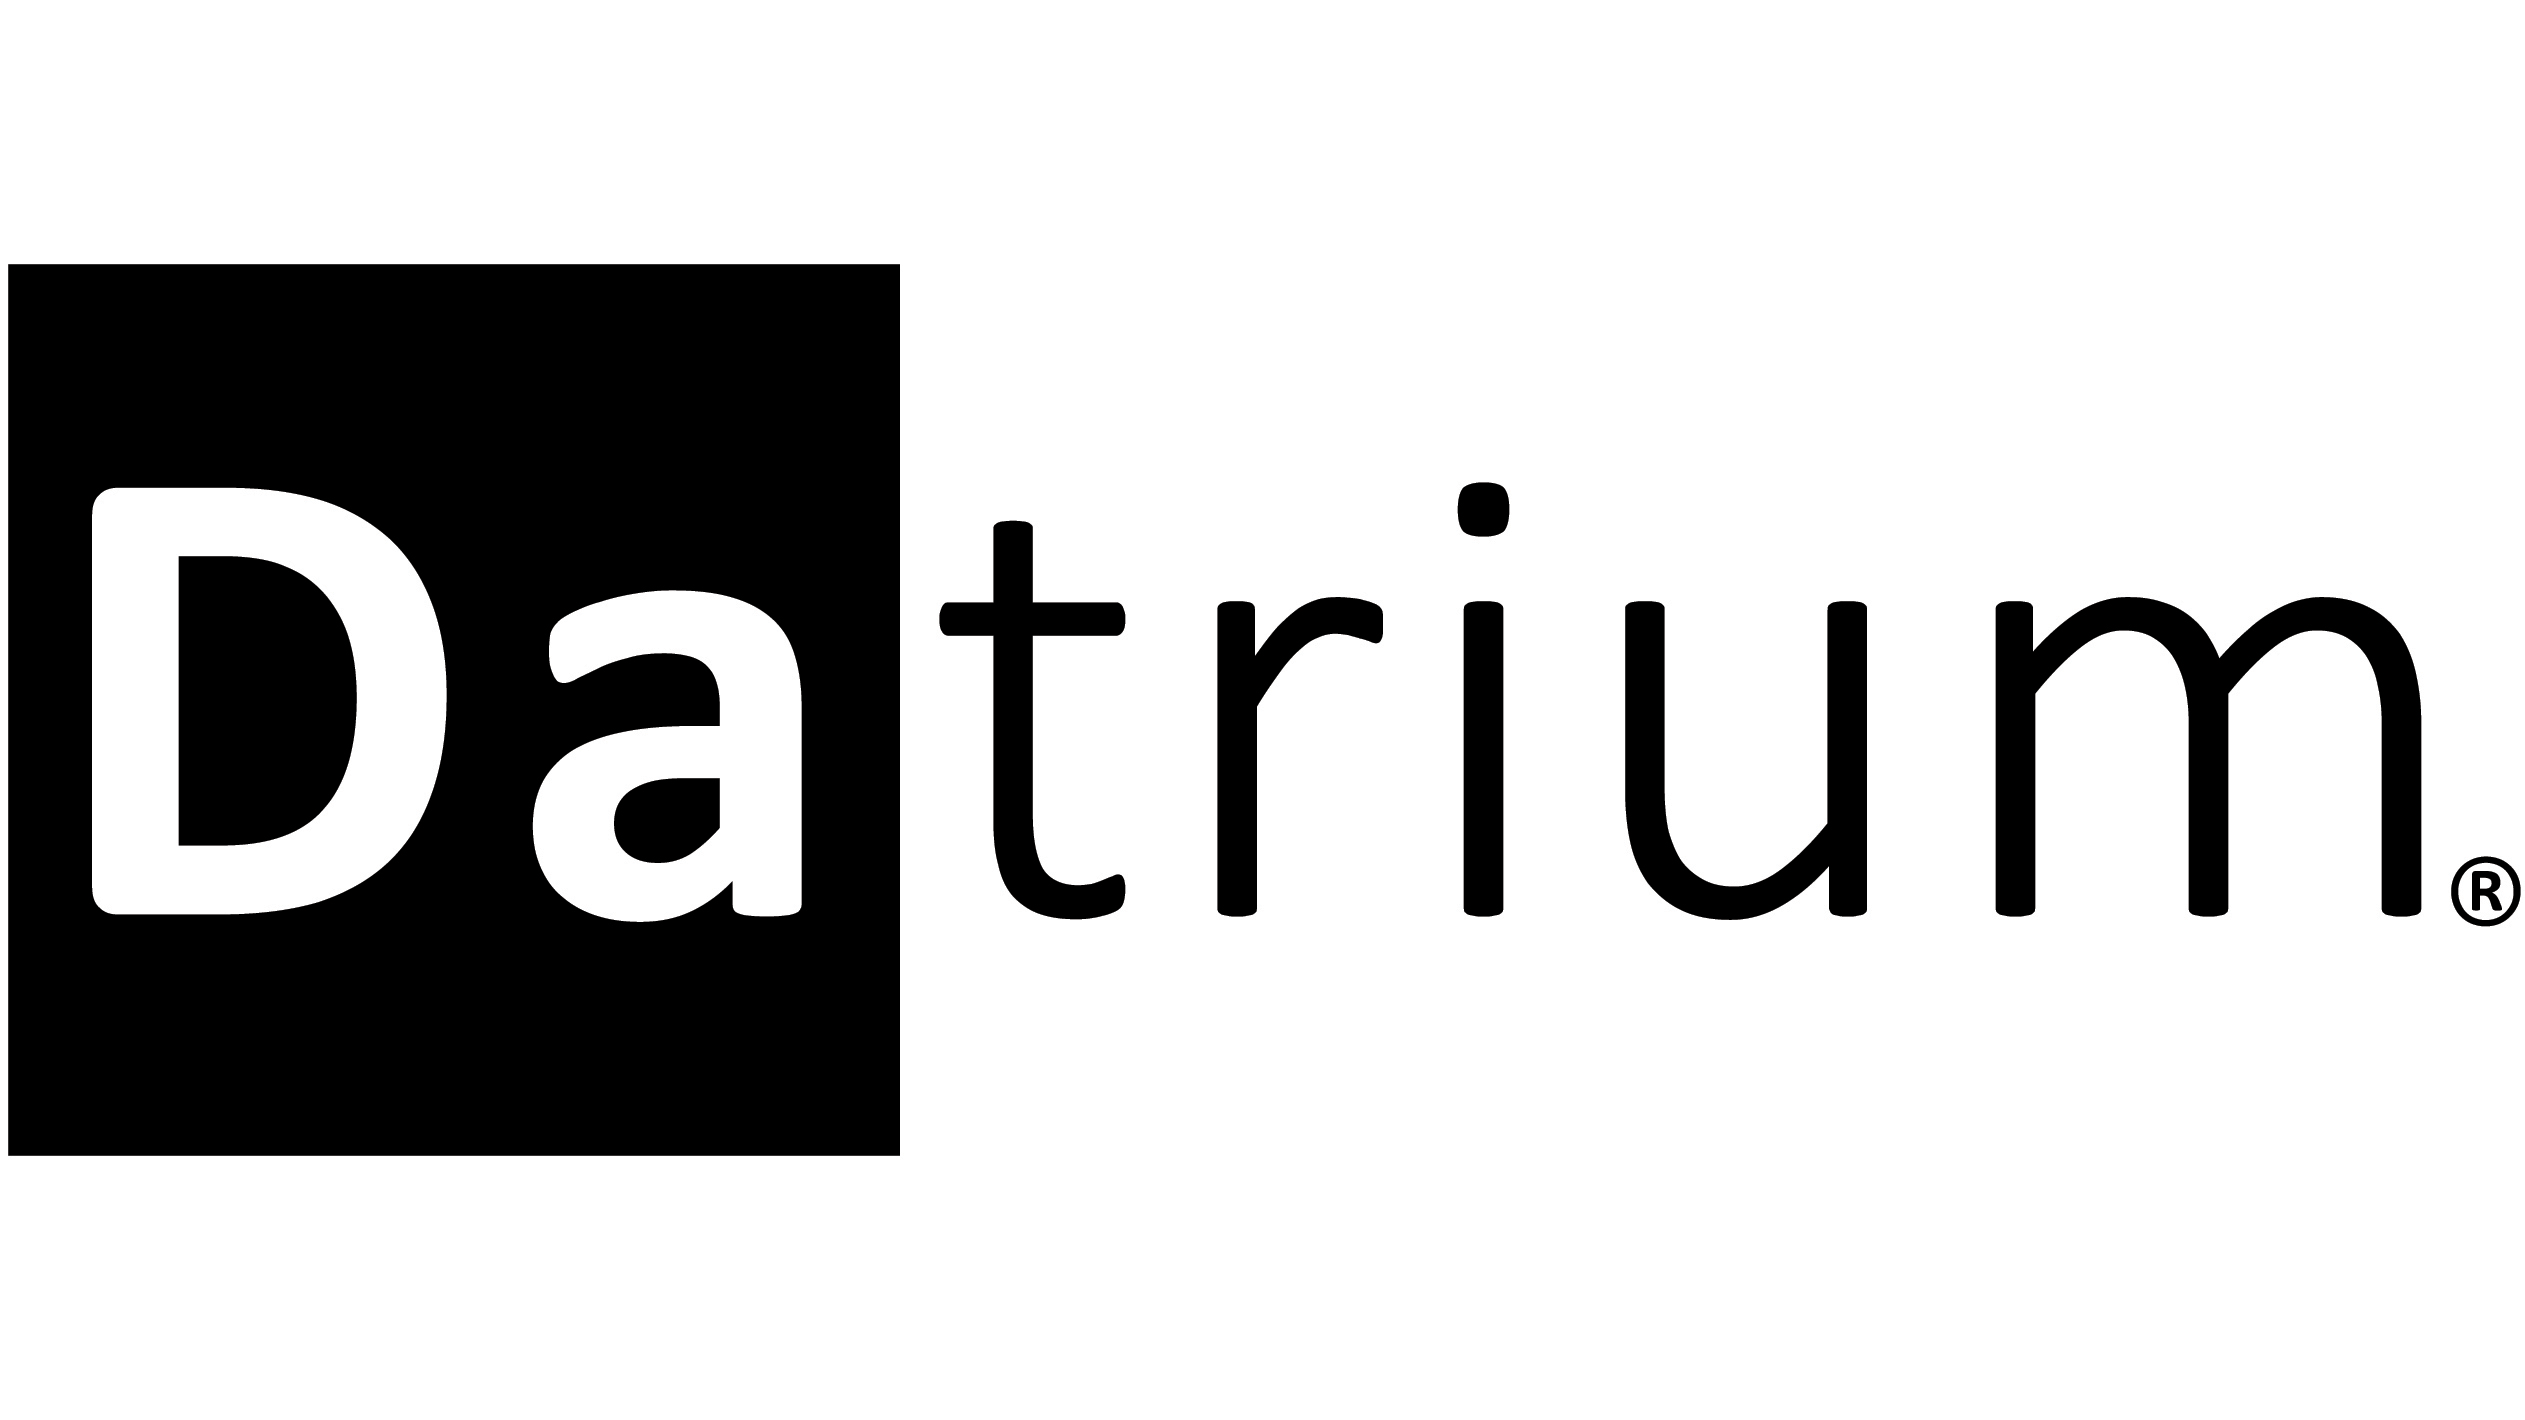 Datrium, Inc.